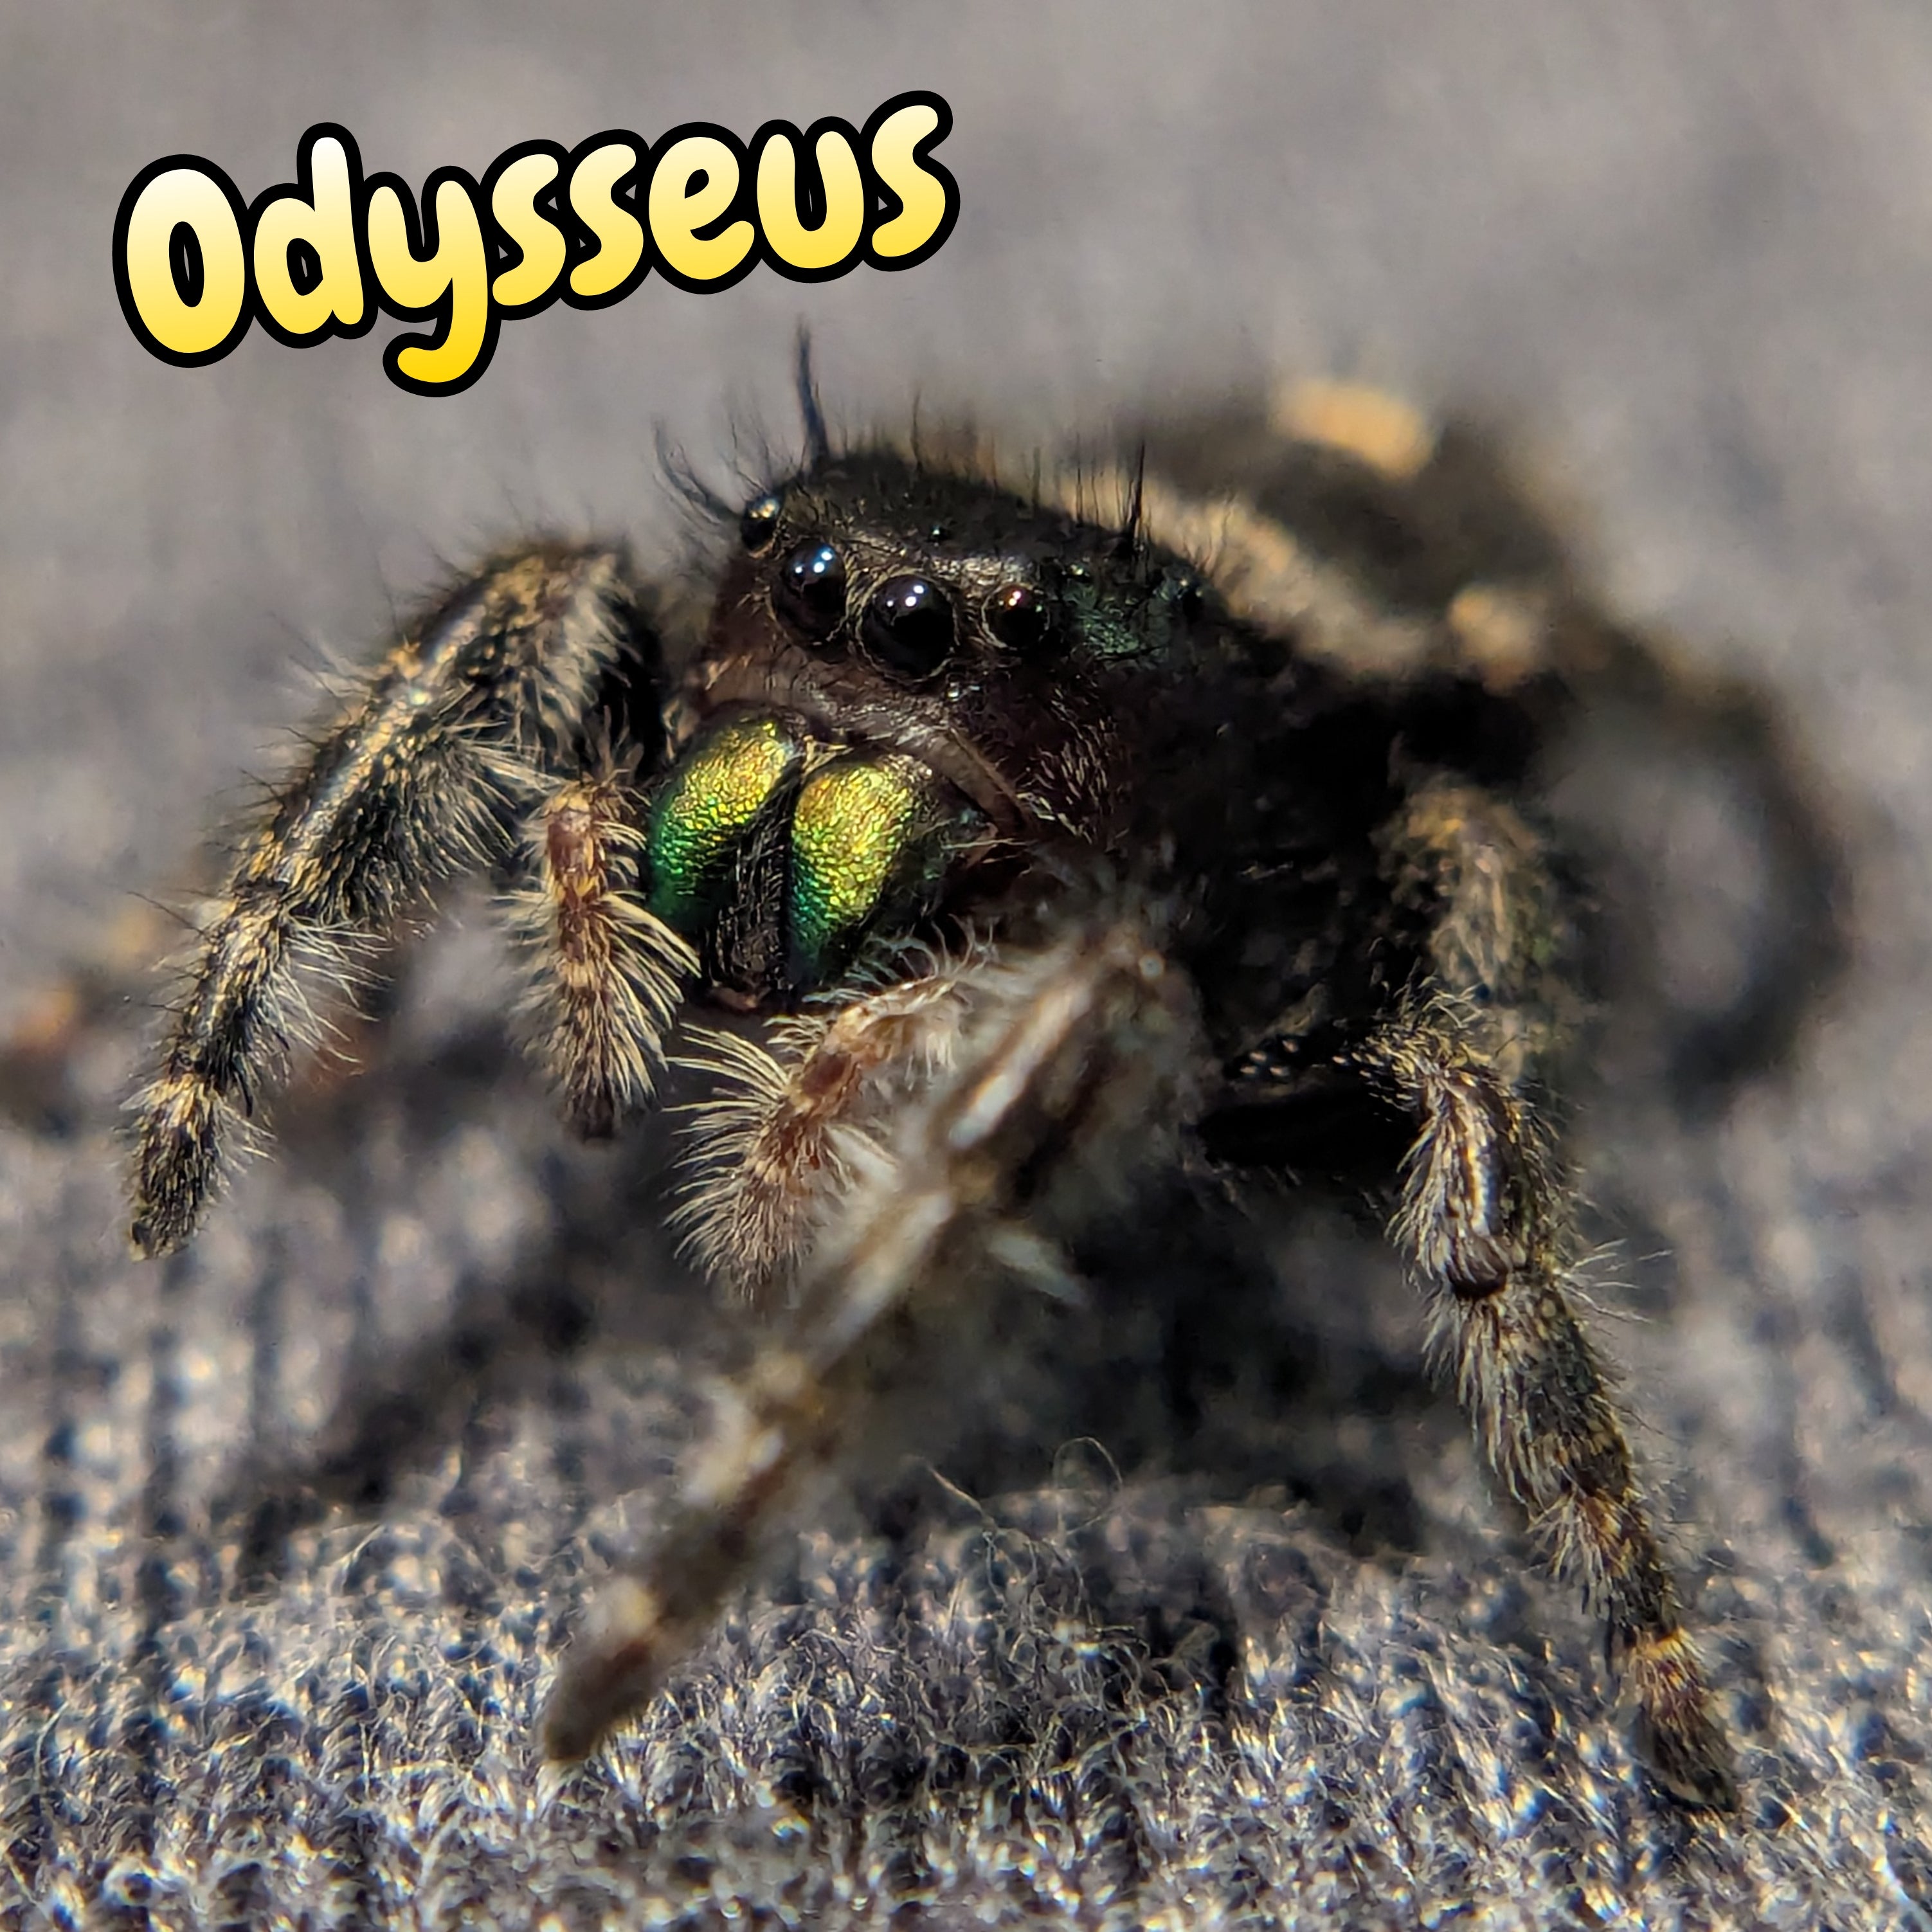 Audax Jumping Spider "Odysseus"